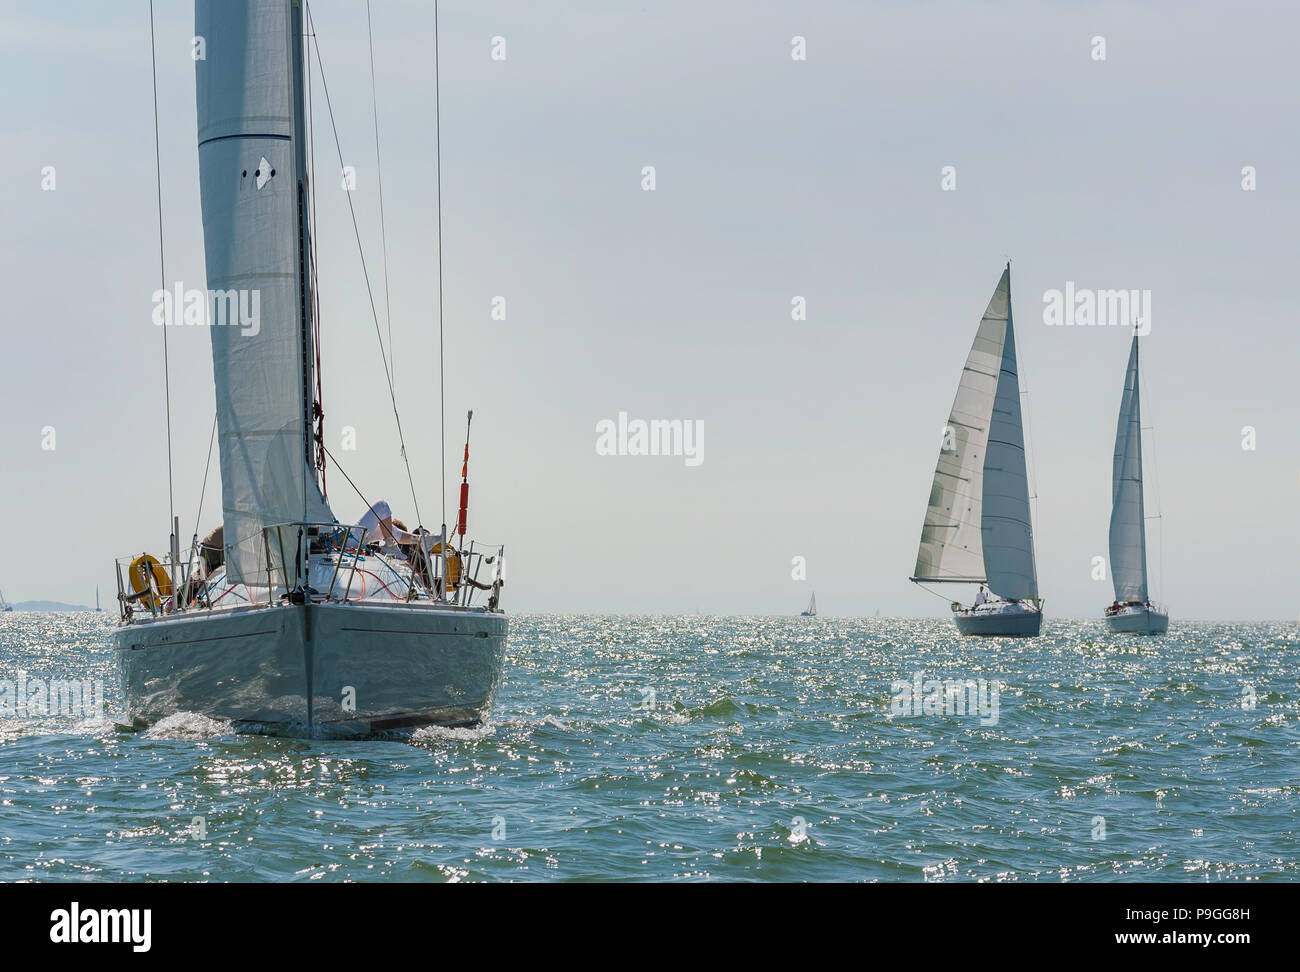 Three beautiful white yachts, sailboats or sail boats sailing at sea on a calm, bright sunny day Stock Photo